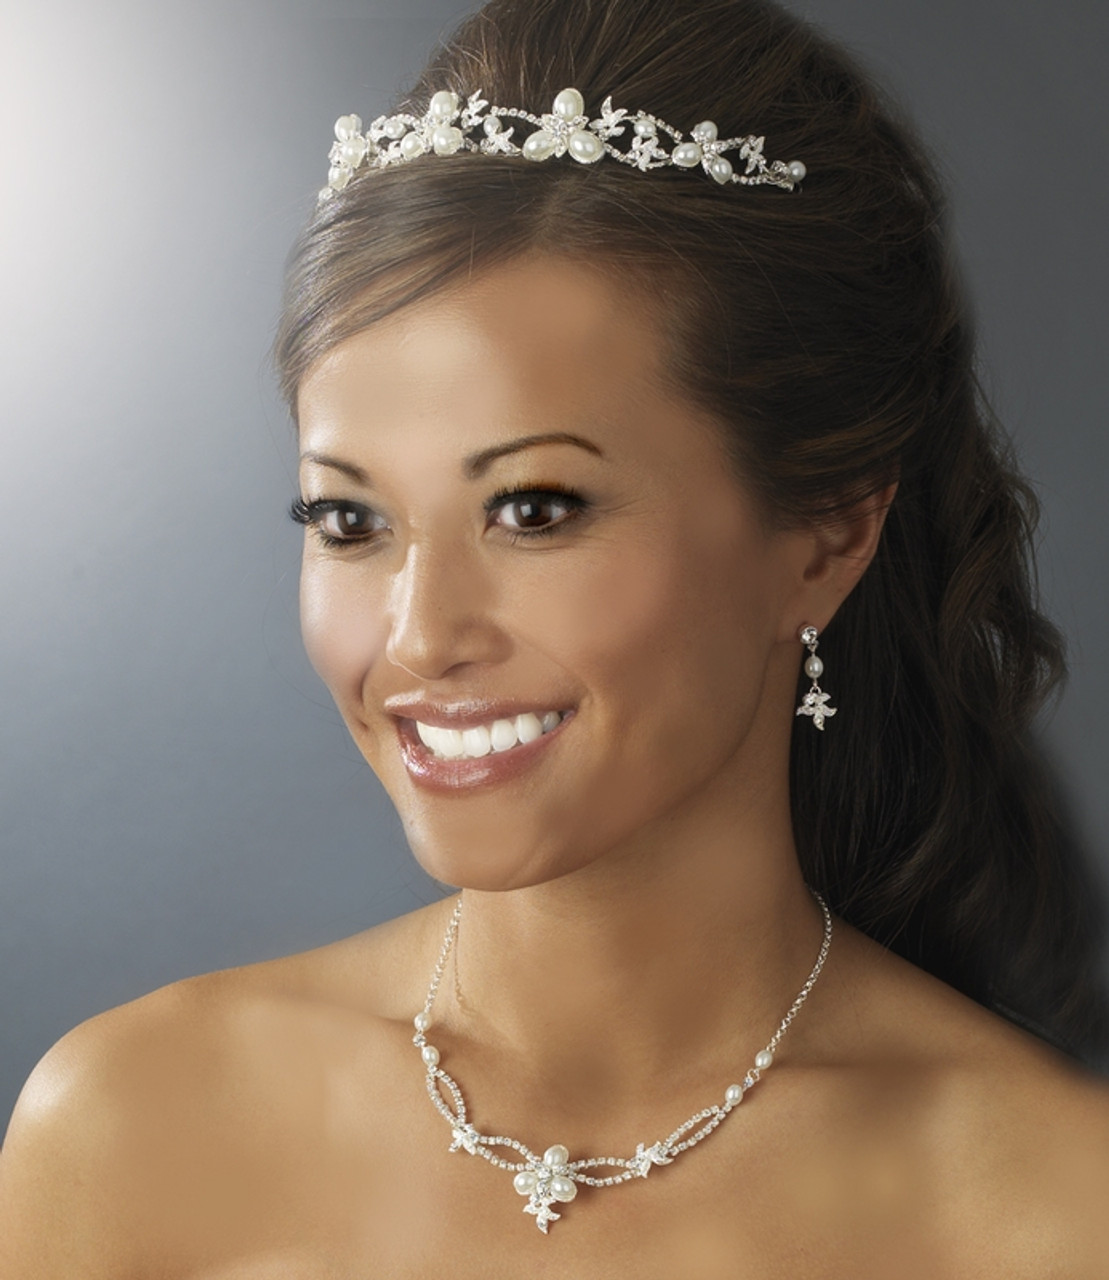 Swarovski Crystal Bridal Necklace Earring & Tiara Set HP7808